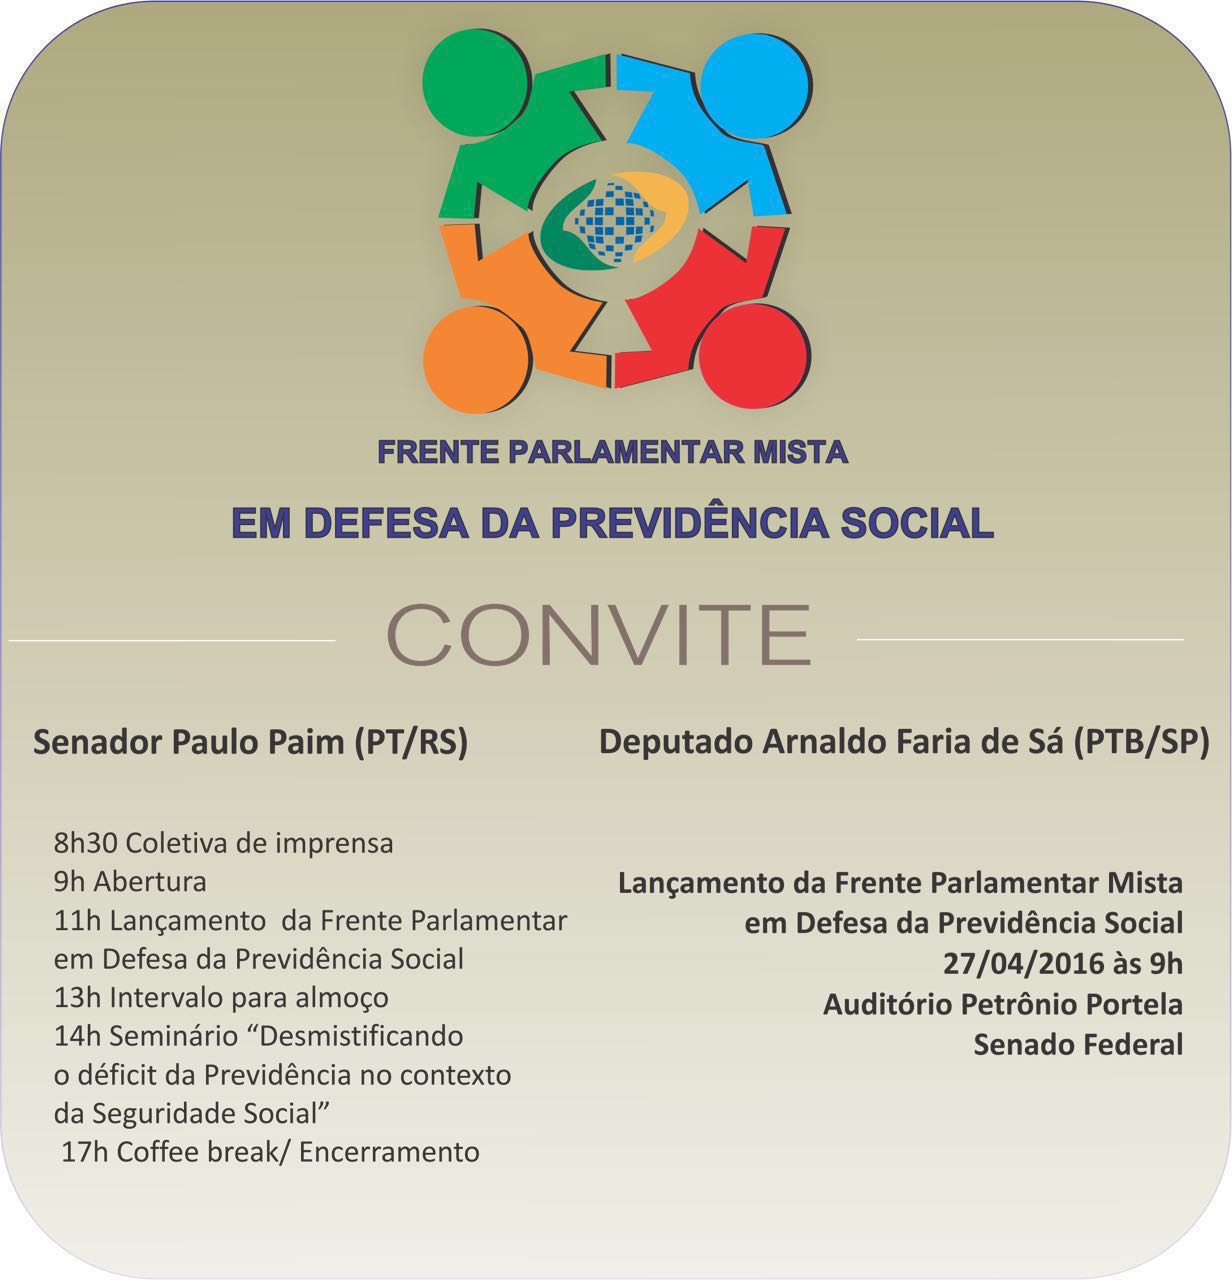 27/04 em Brasília: Frente Parlamentar Mista para defender previdência social é lançada